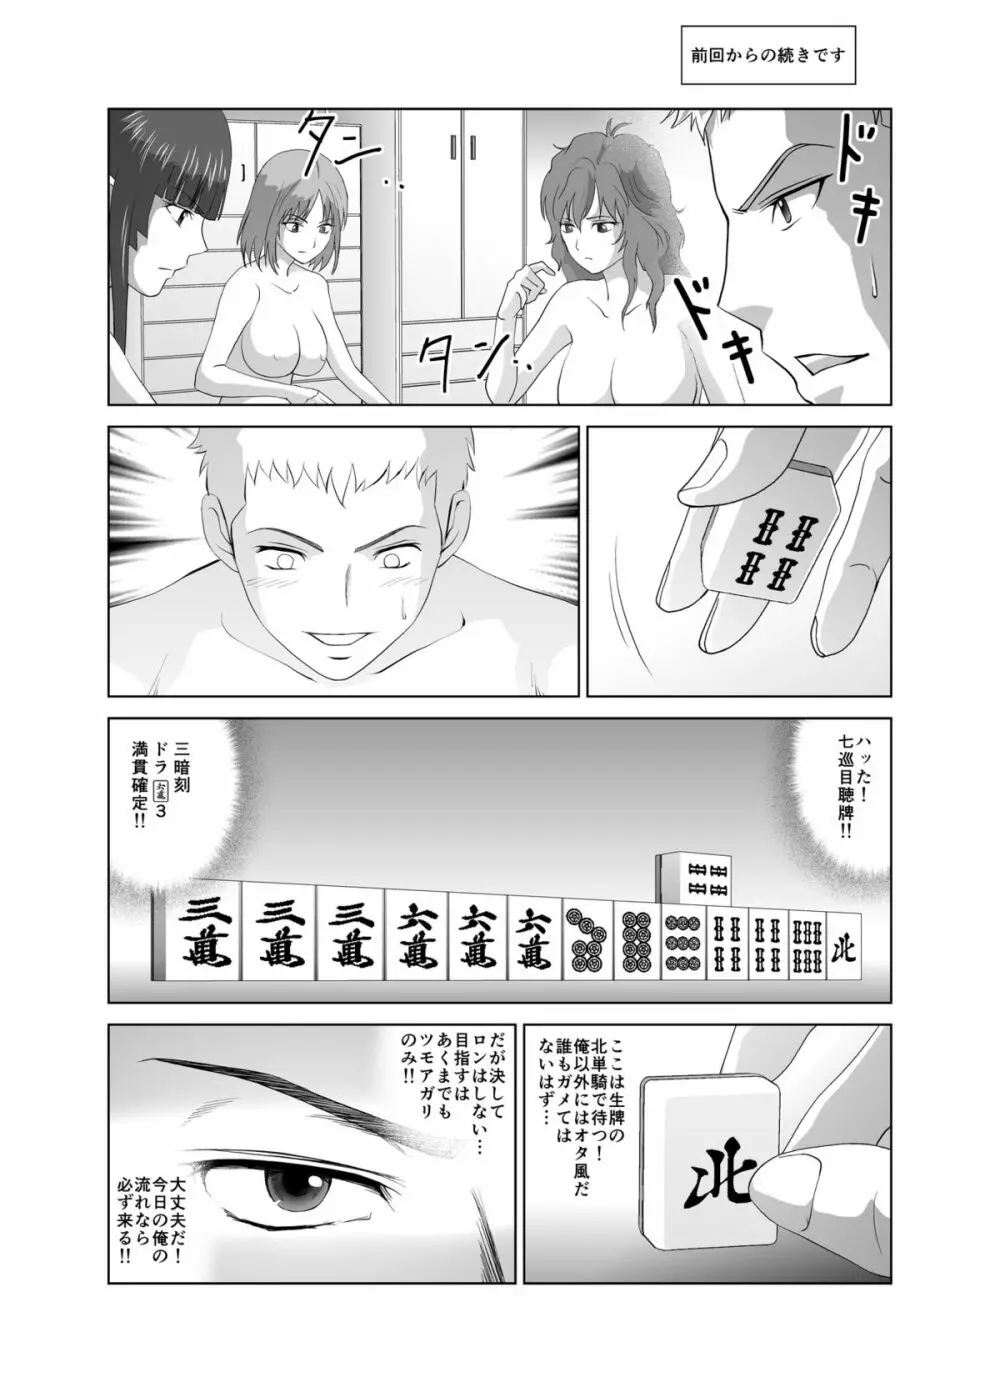 脱衣麻雀～漫画編～【完成版】 Page.23